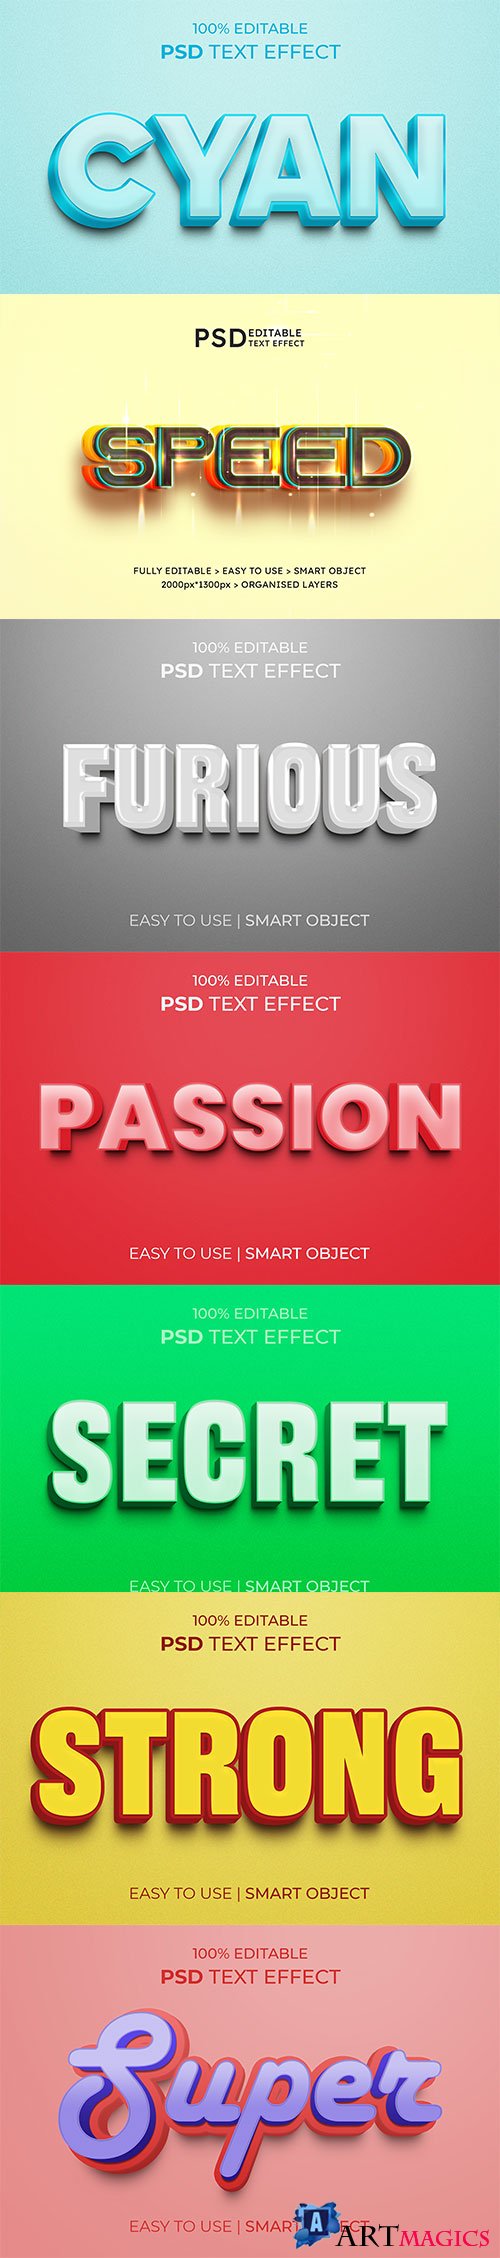 Psd text effect set vol 596